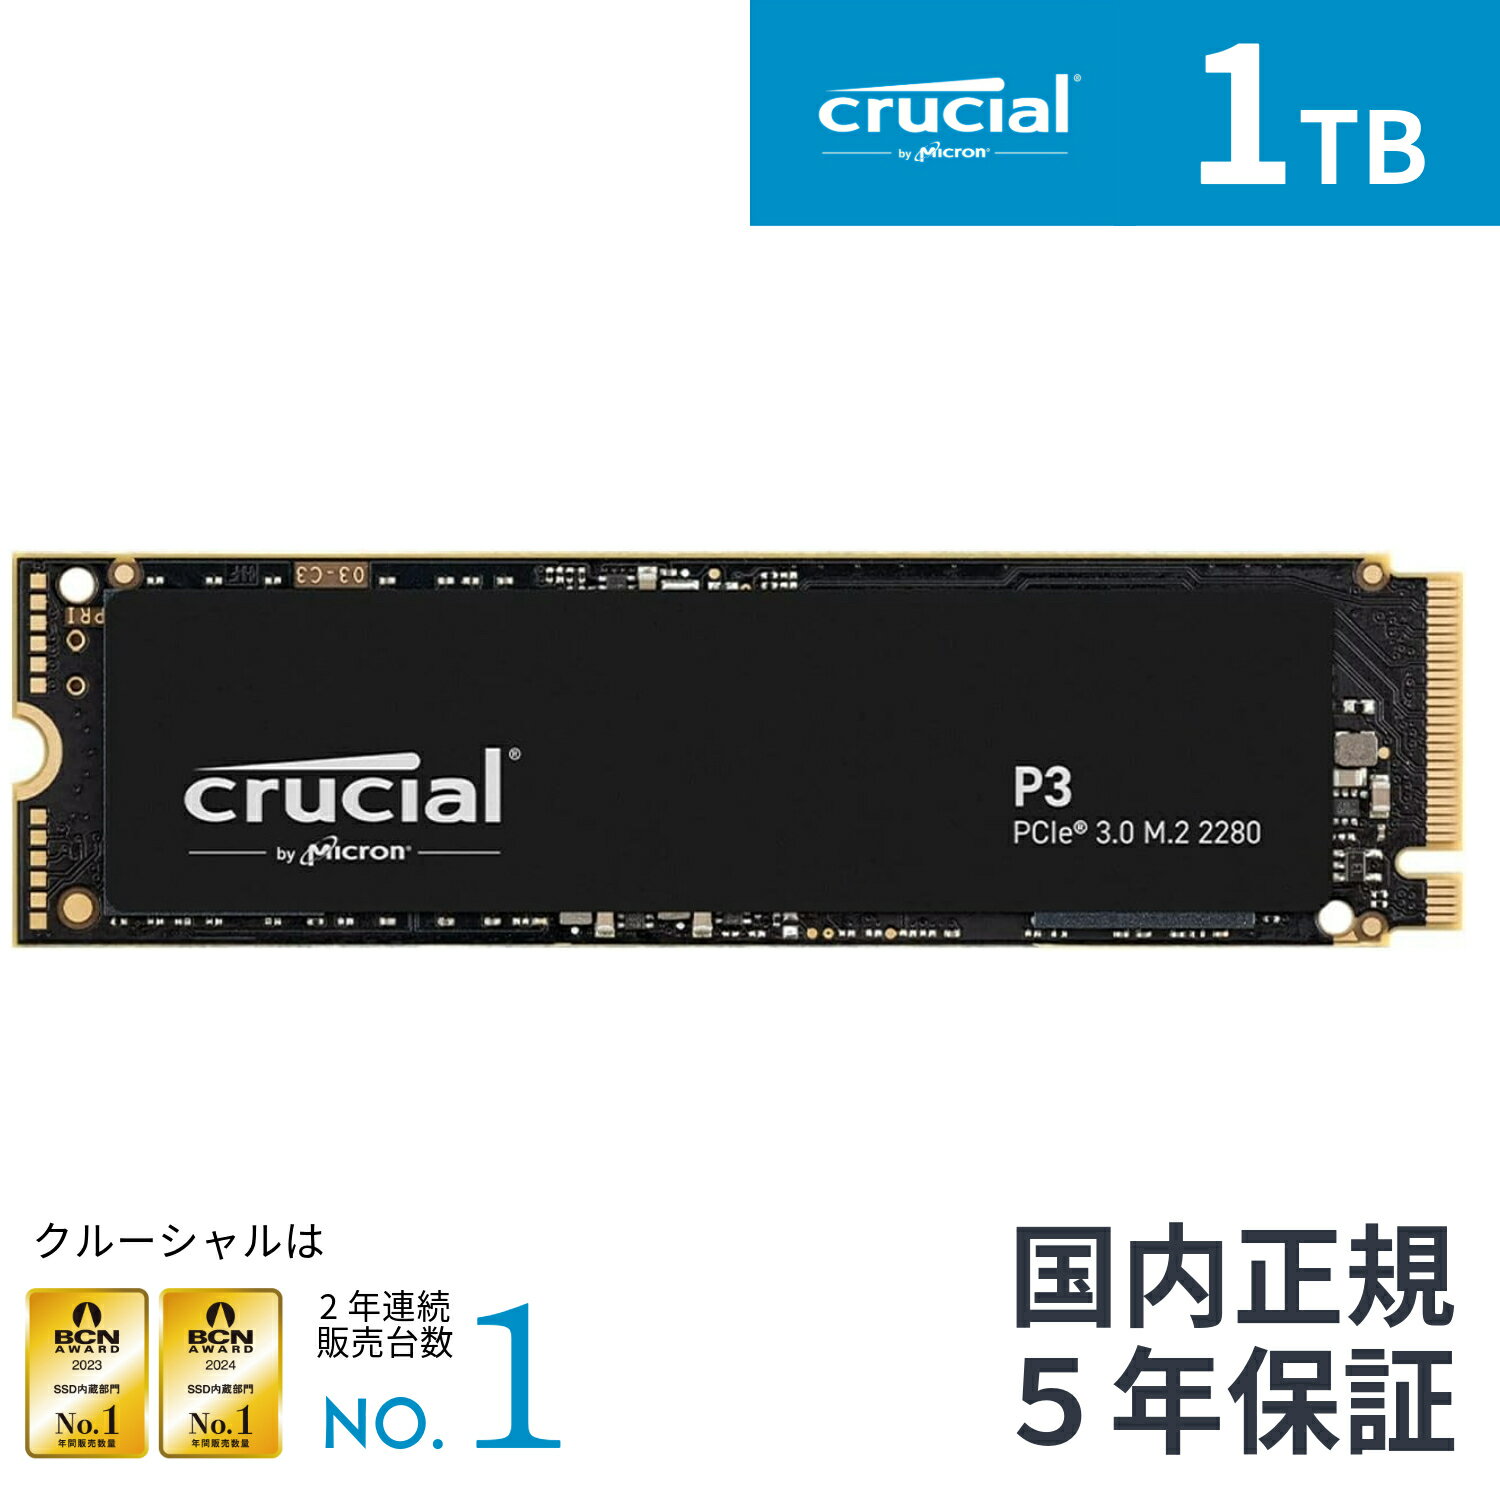 【国内正規流通品】Crucial クルーシャルP3 1TB 3D NAND NVMe PCIe3.0 M.2 SSD 最大3500MB/秒 CT1000P3SSD8JP 5年保証 1000GB 1TB |マイクロン Micron ゲーム ゲーミング 高速 Gen4 増設 換装 …